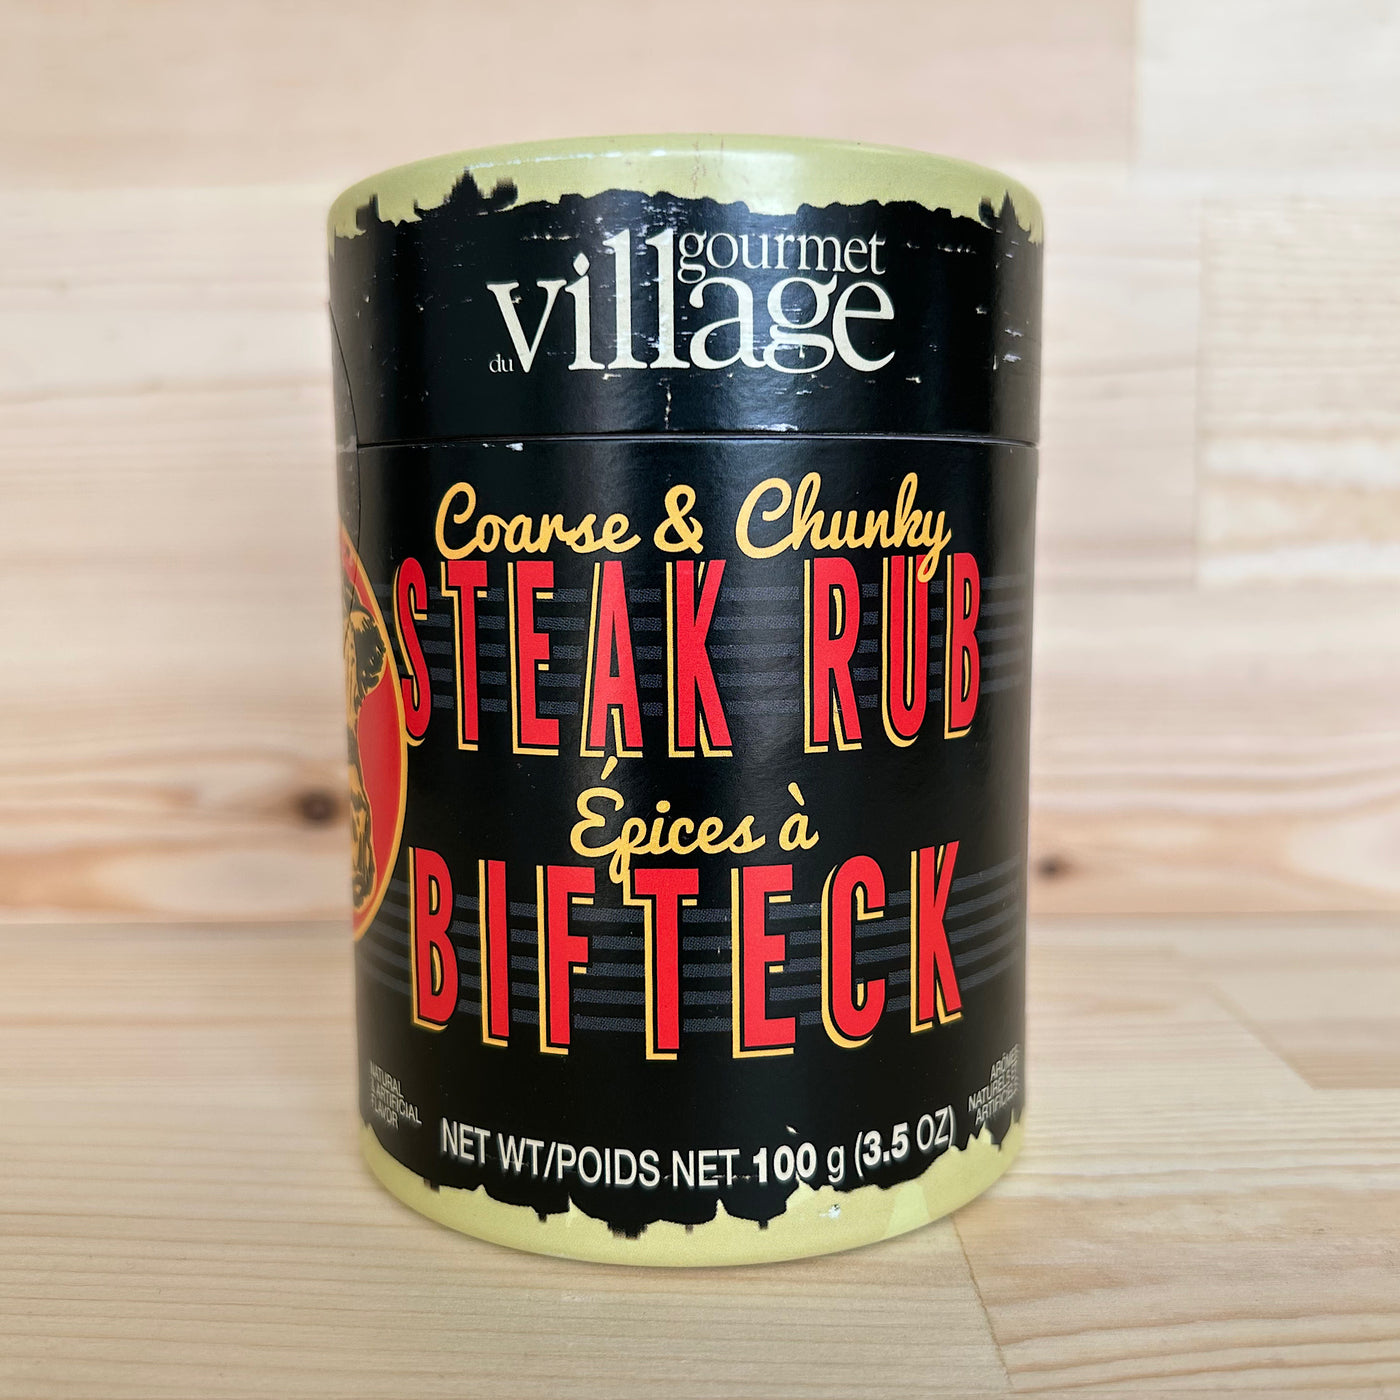 Coarse and Chunky Steak Rub